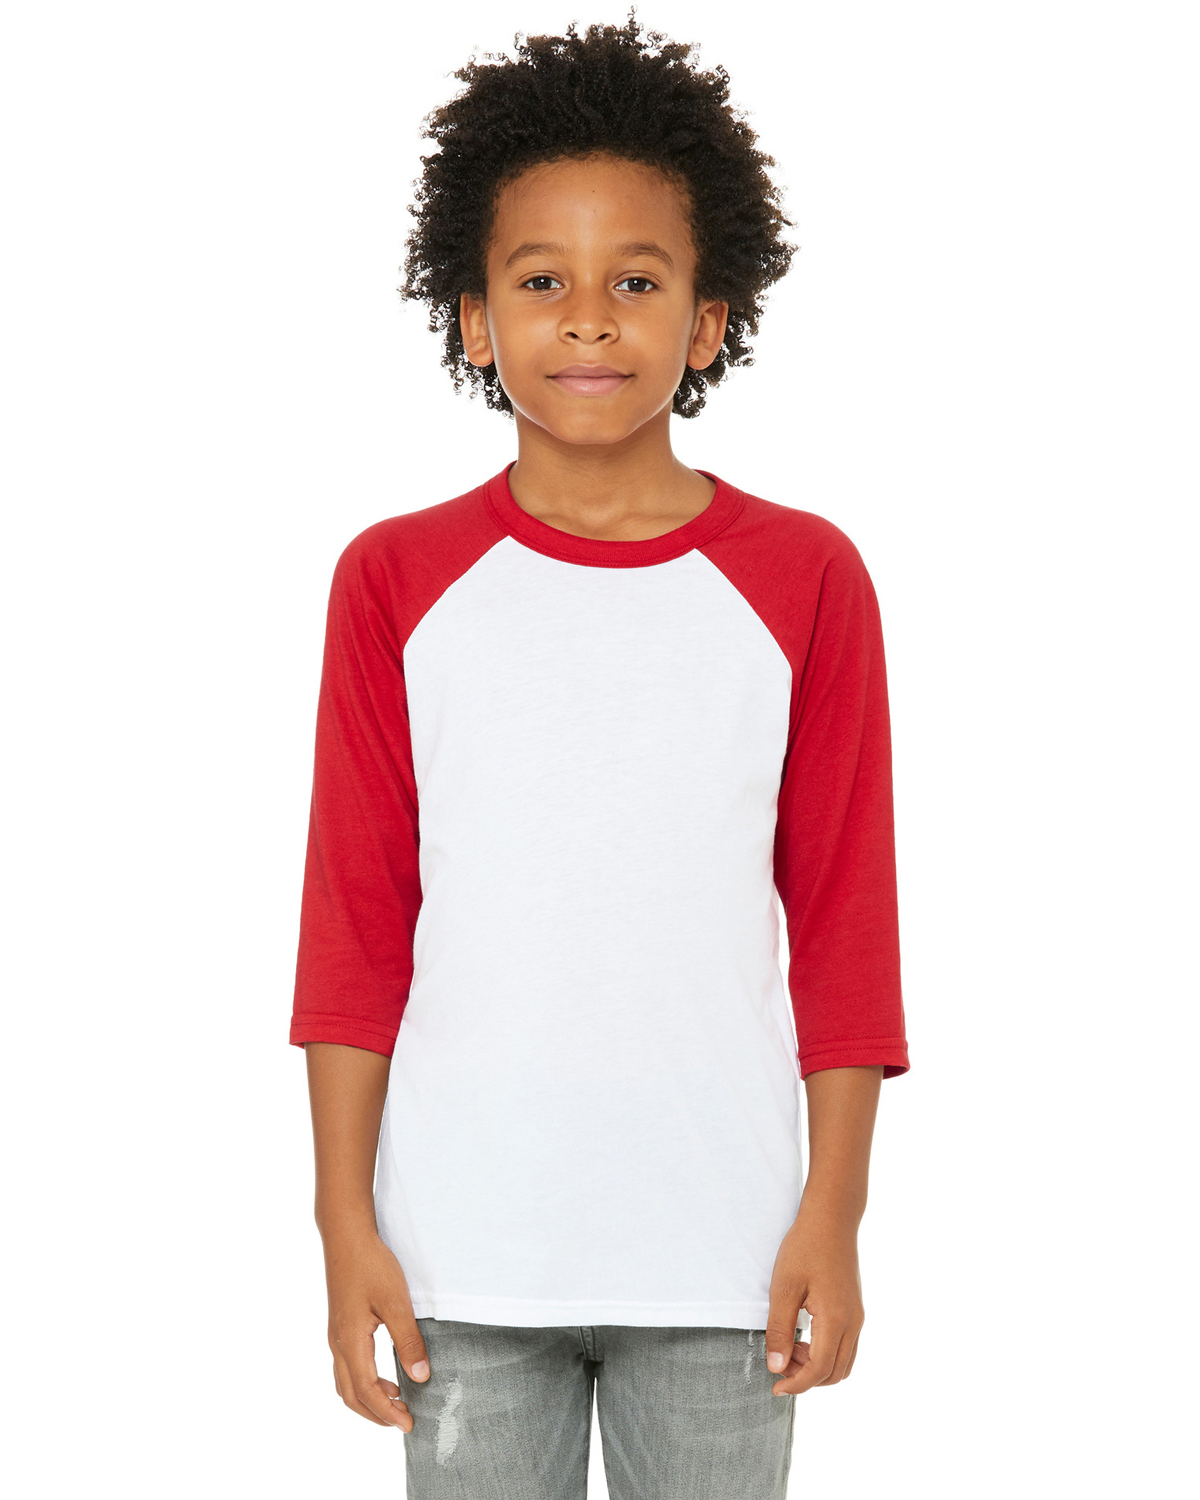 Kids Jersey Raglan T-Shirt Children 3/4 Sleeve Baseball Shirt Top